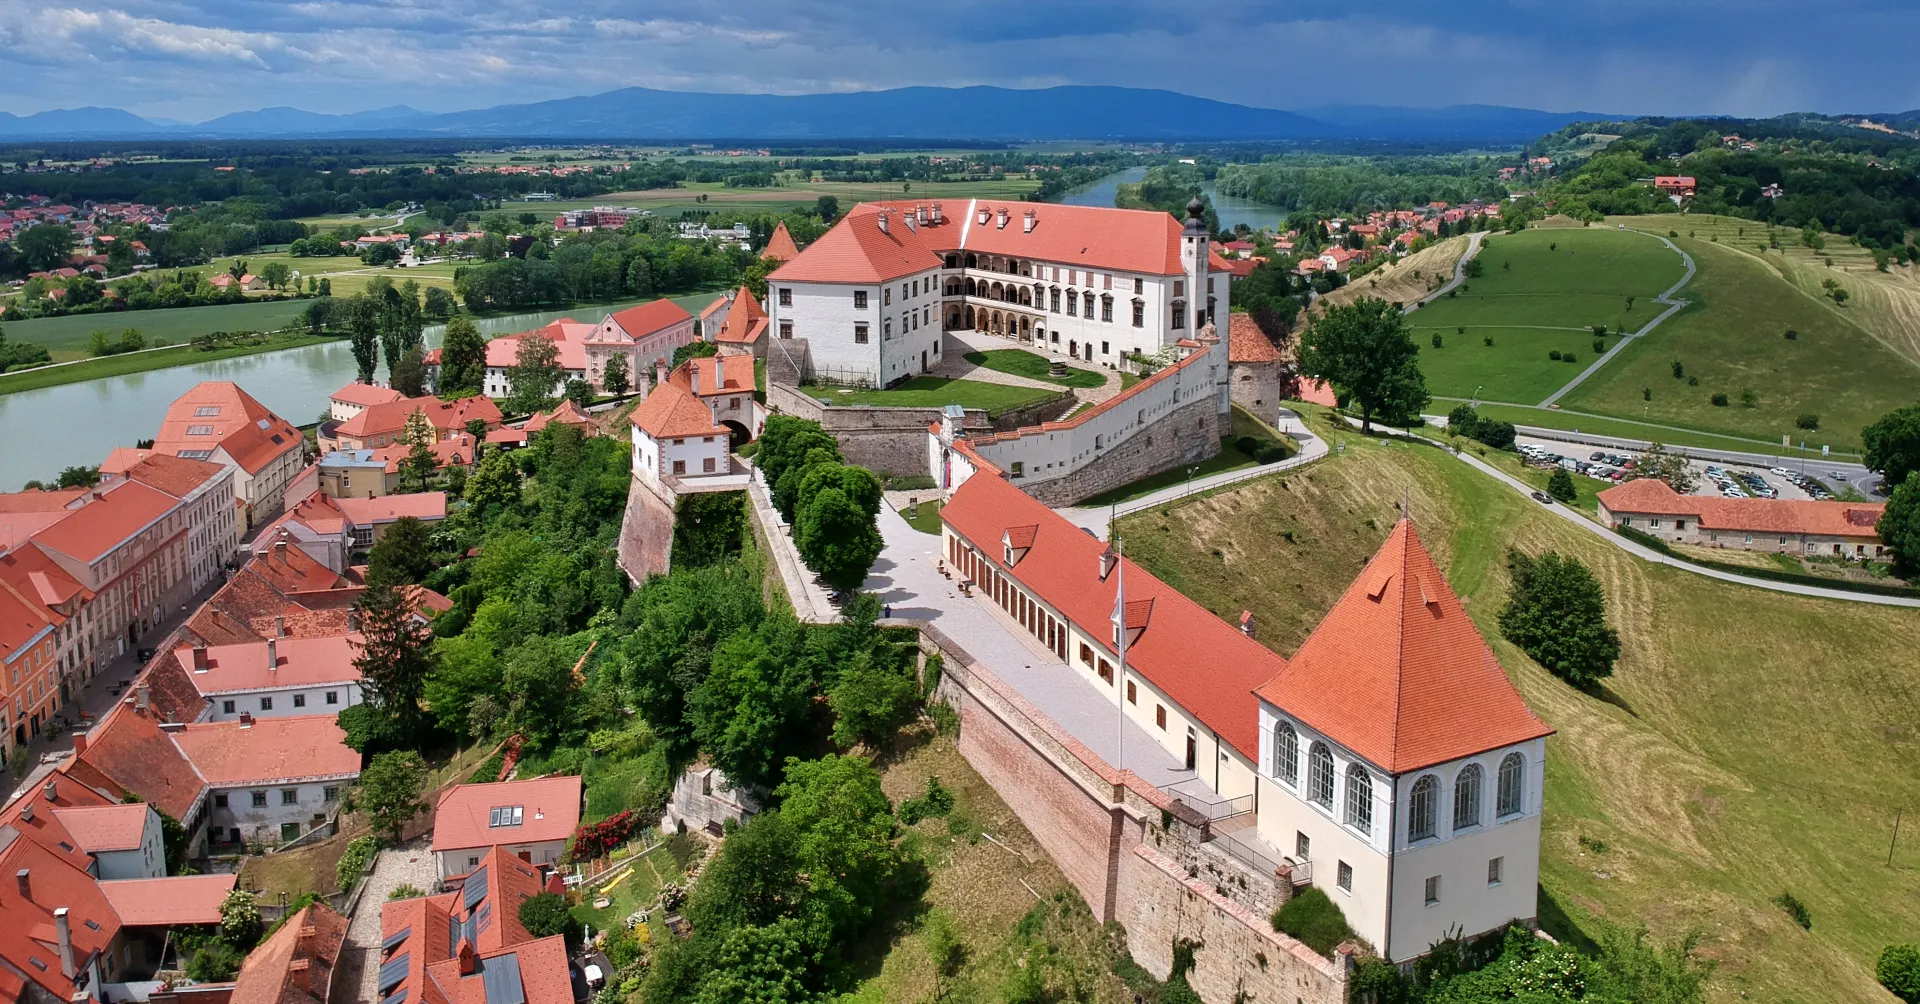 Ptujski grad, slikovita grajska utrdba najstarejšega slovenskega mesta